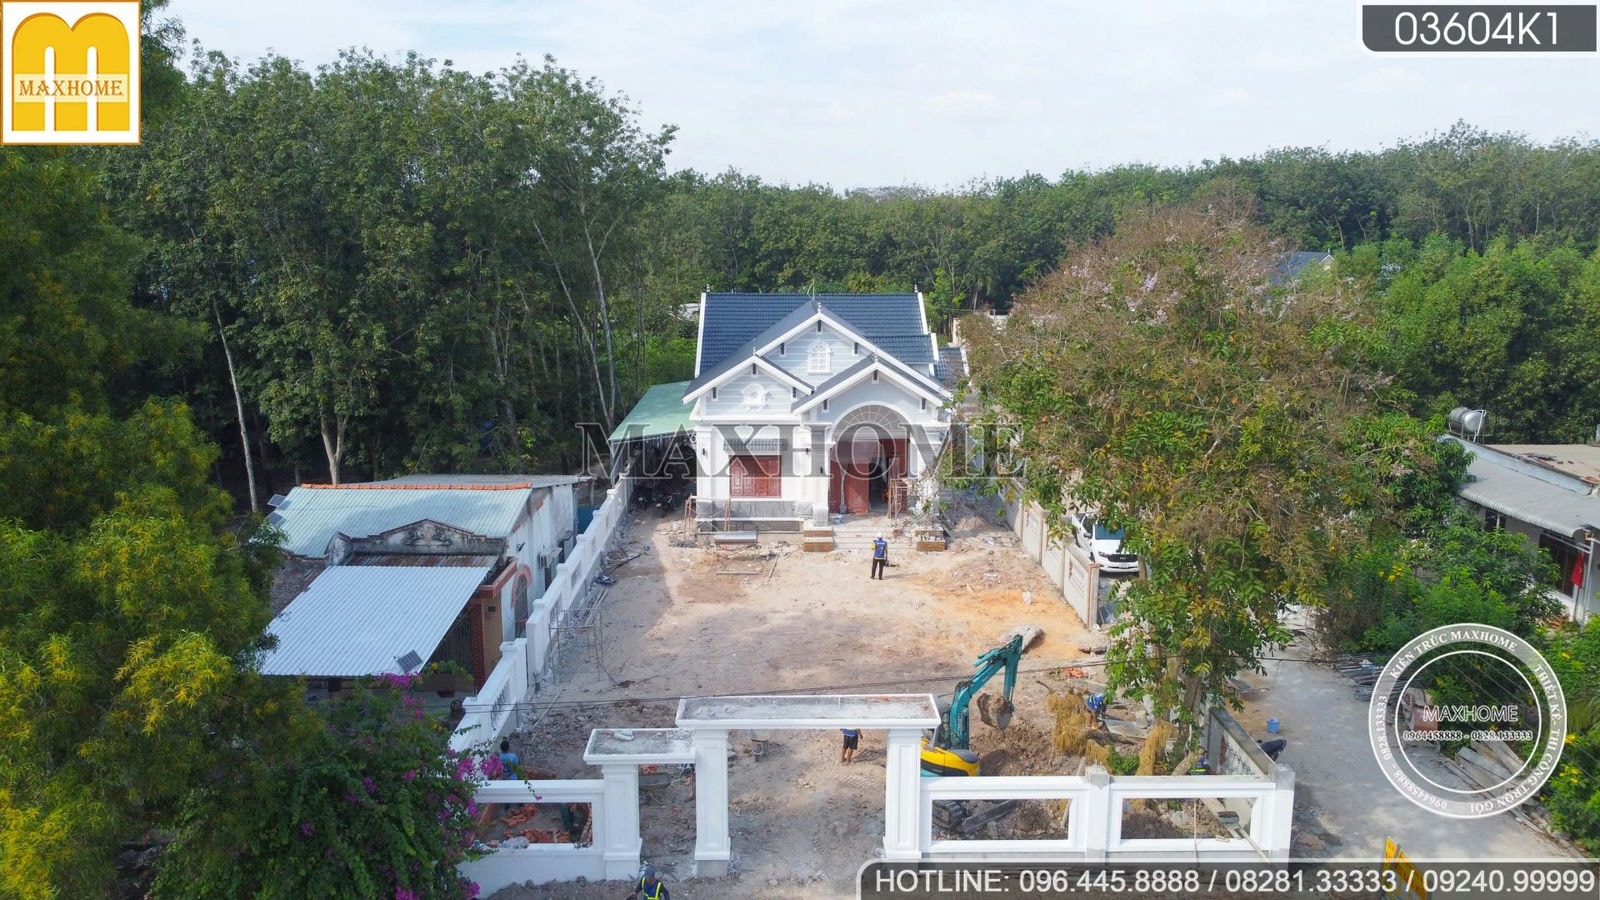 ĐẸP XUẤT SẮC nhà vườn mái Thái Maxhome thi công trọn gói tại Bình Dương | MH01897